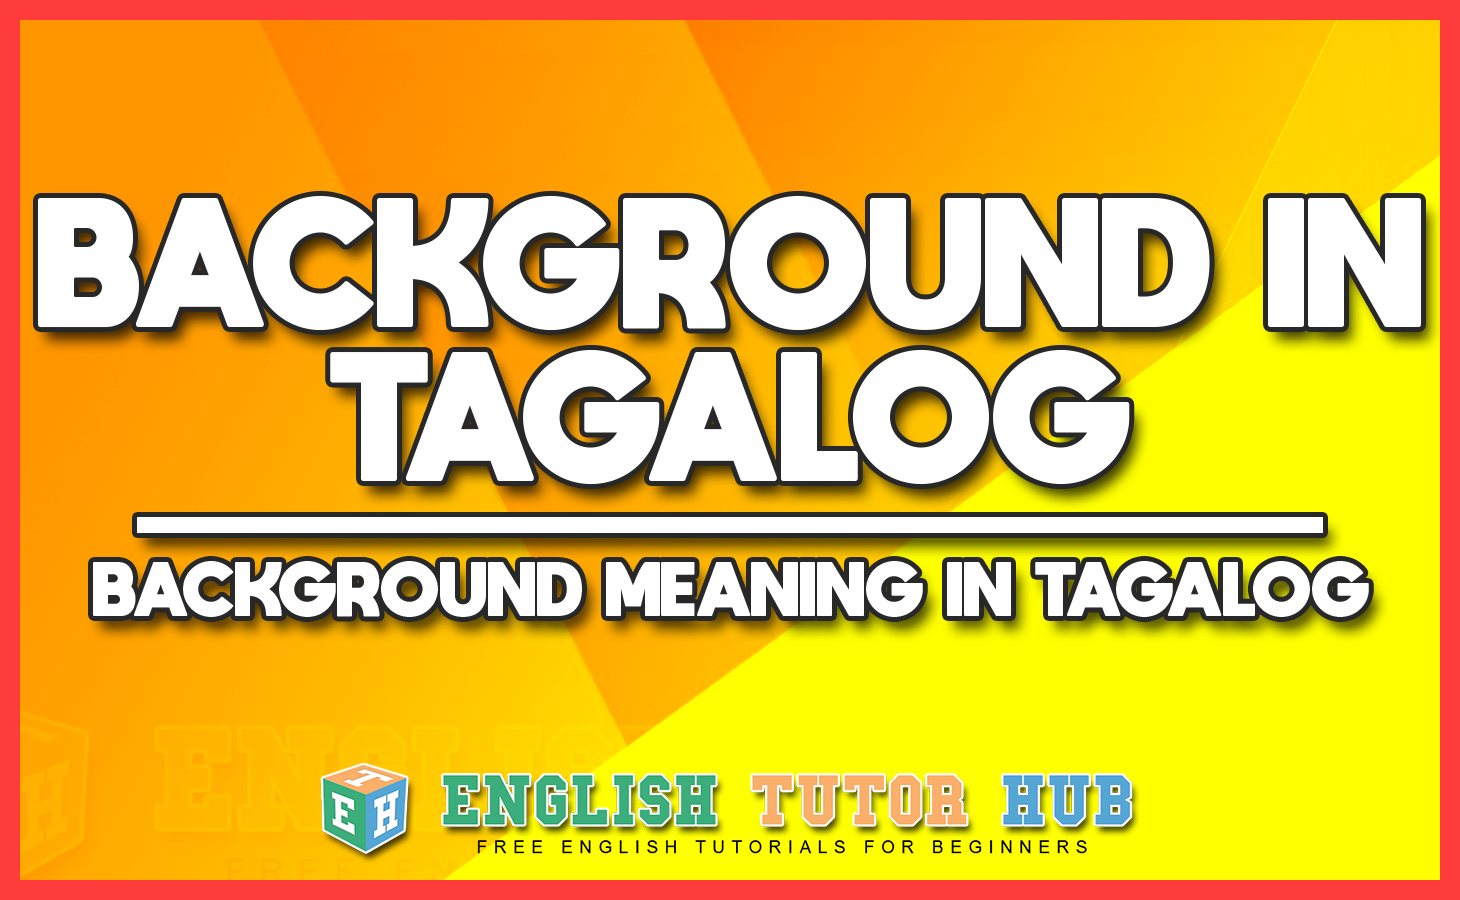 Hãy xem bức ảnh này để khám phá ngôn ngữ Tagalog qua lời dịch đầy cảm hứng và sức sống.